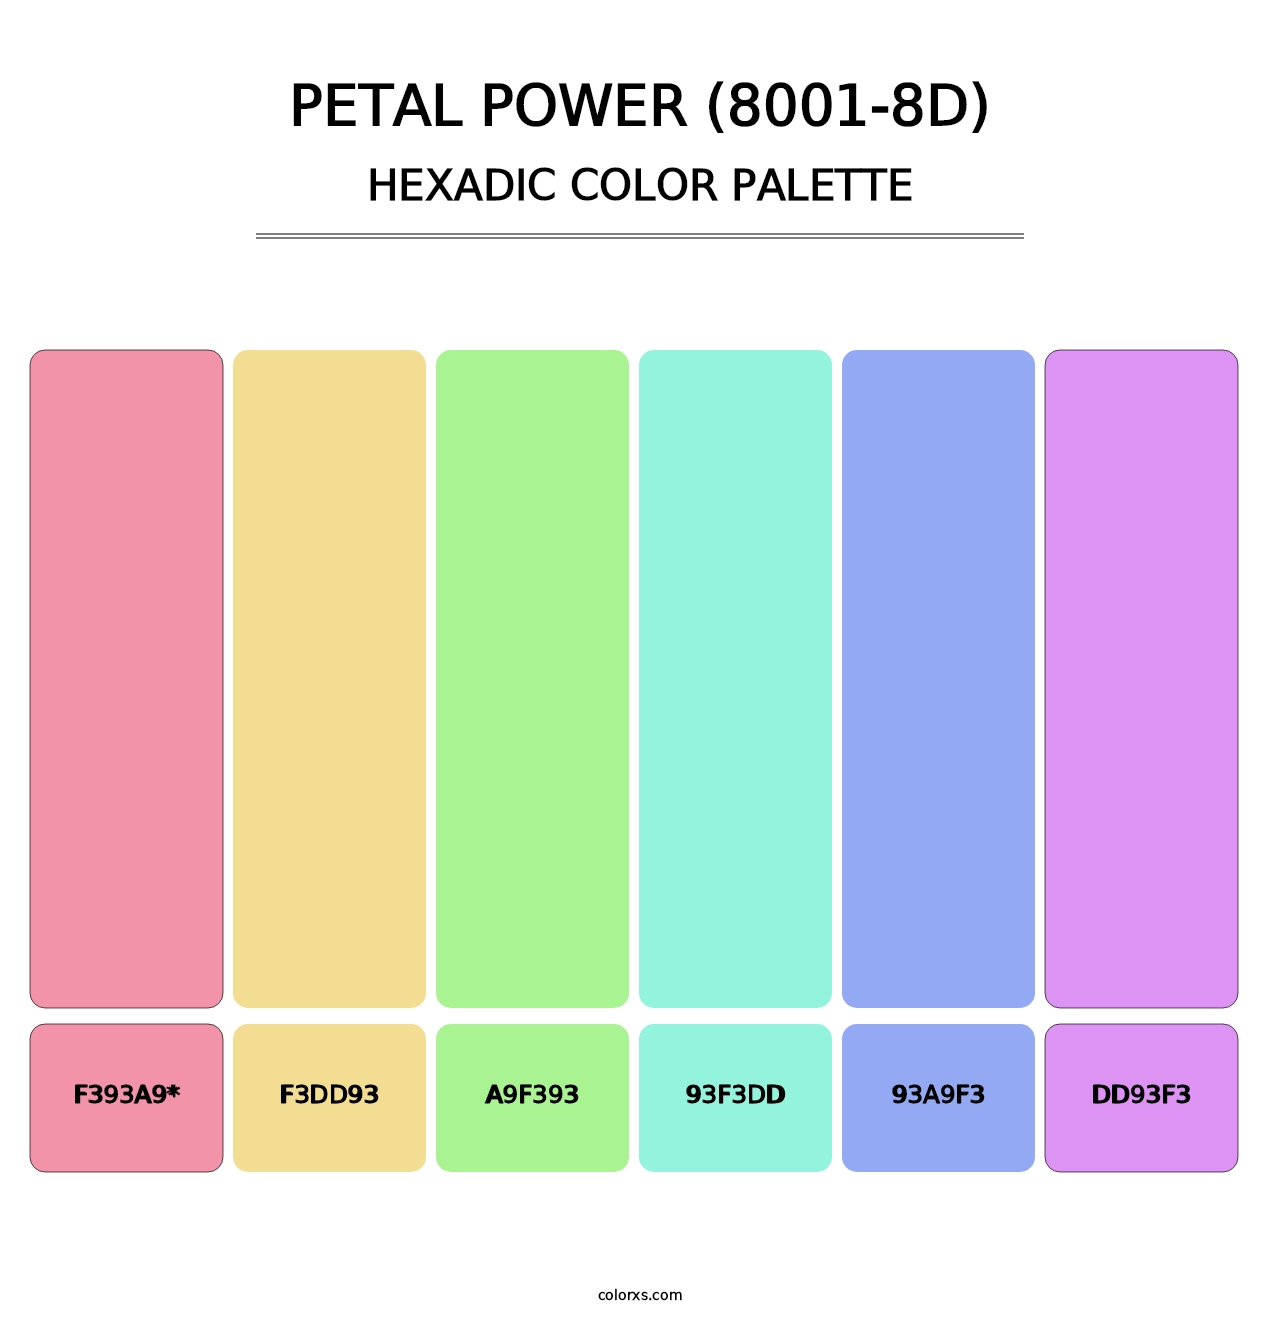 Petal Power (8001-8D) - Hexadic Color Palette